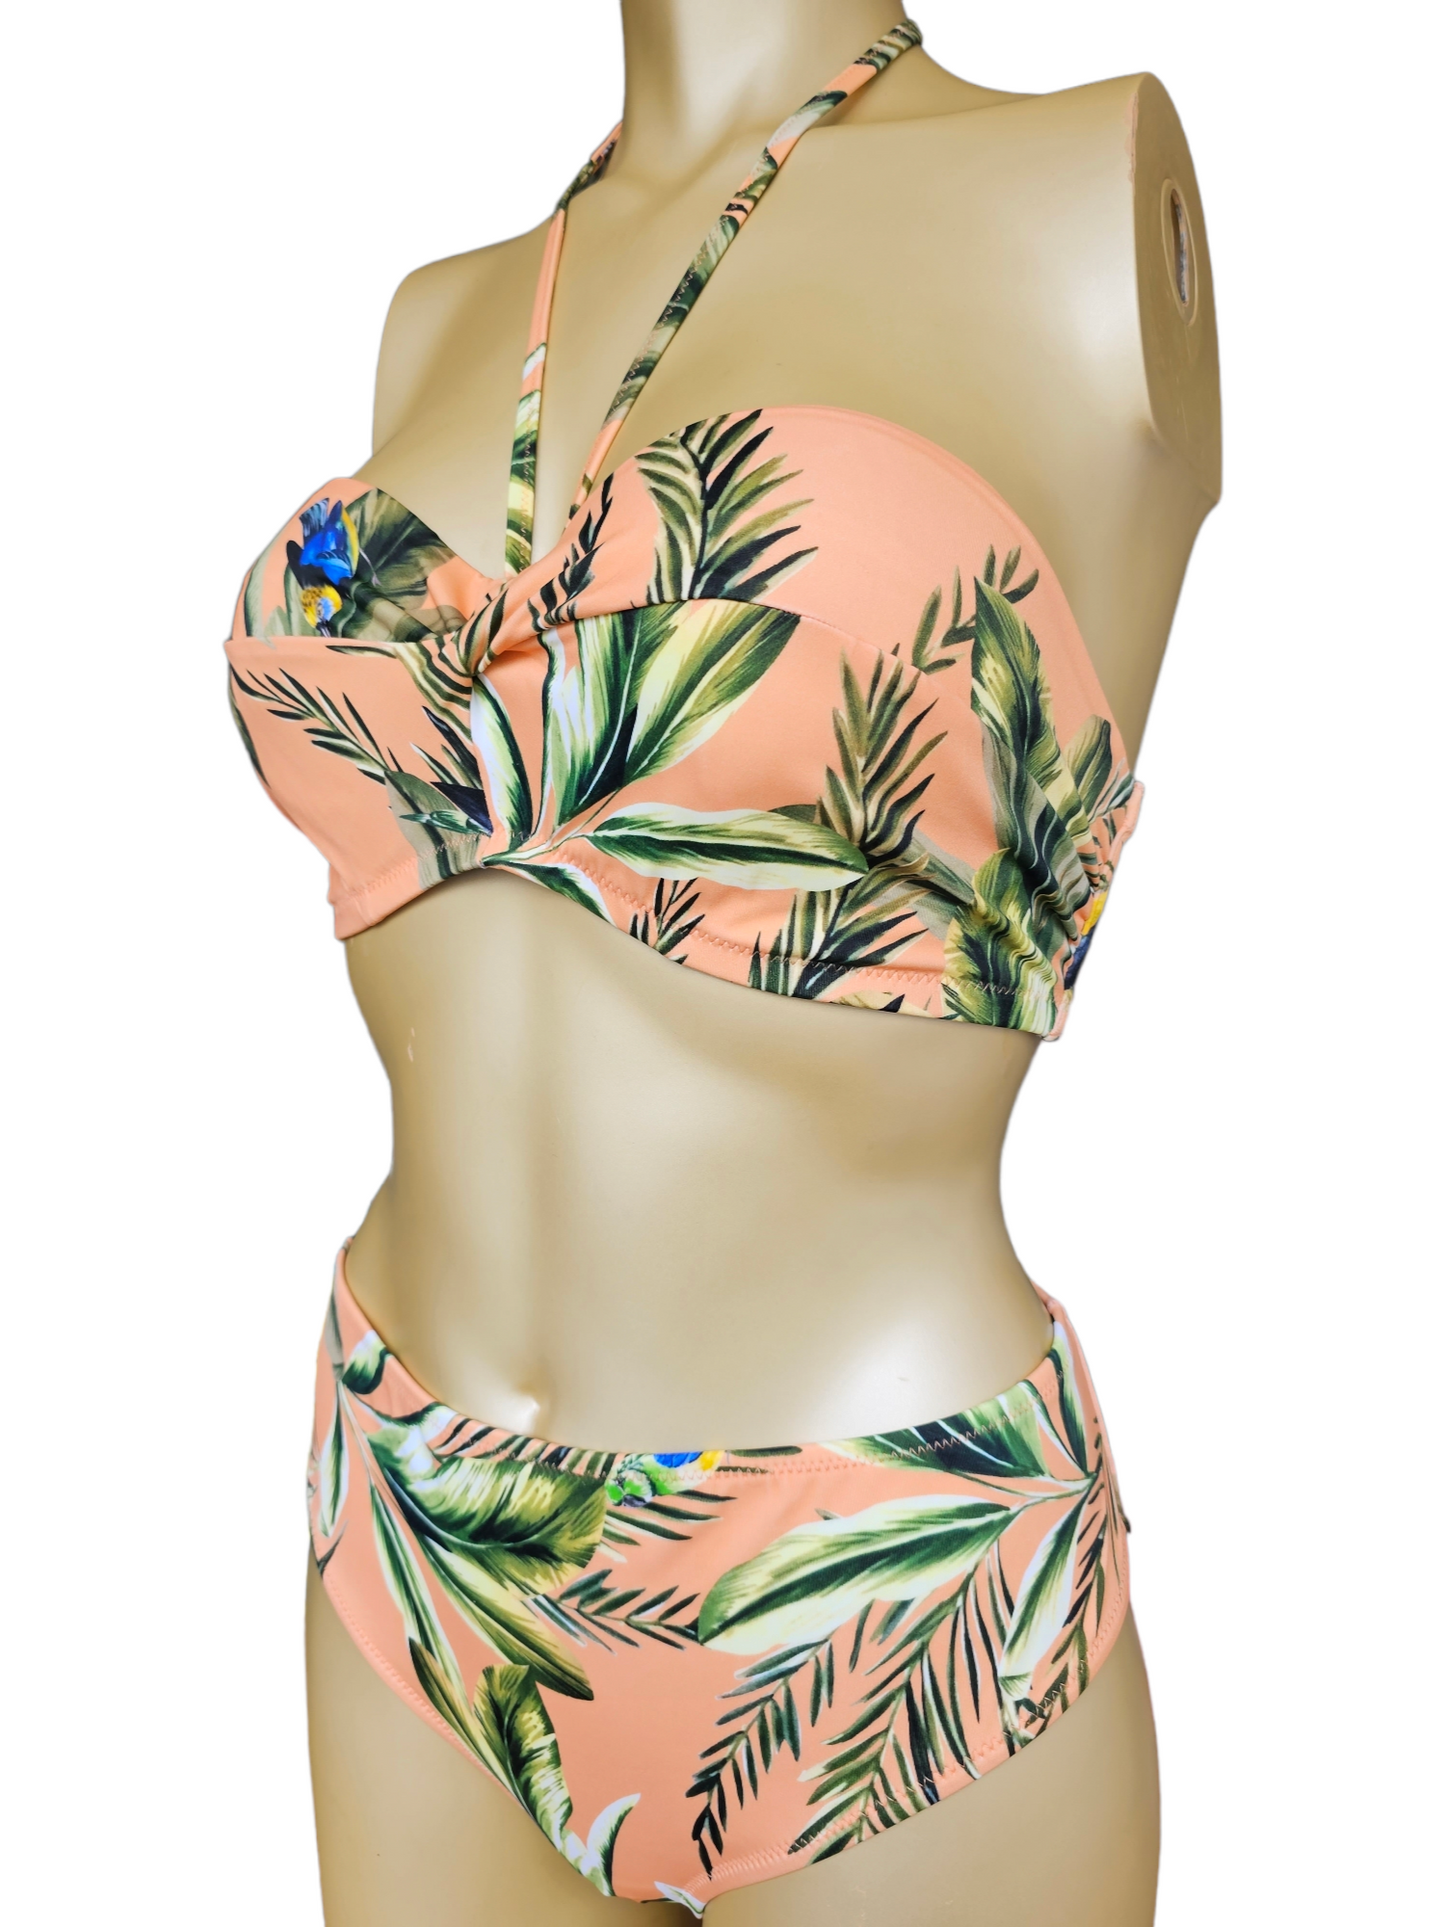 Freya - Birds in Paradise bikini set